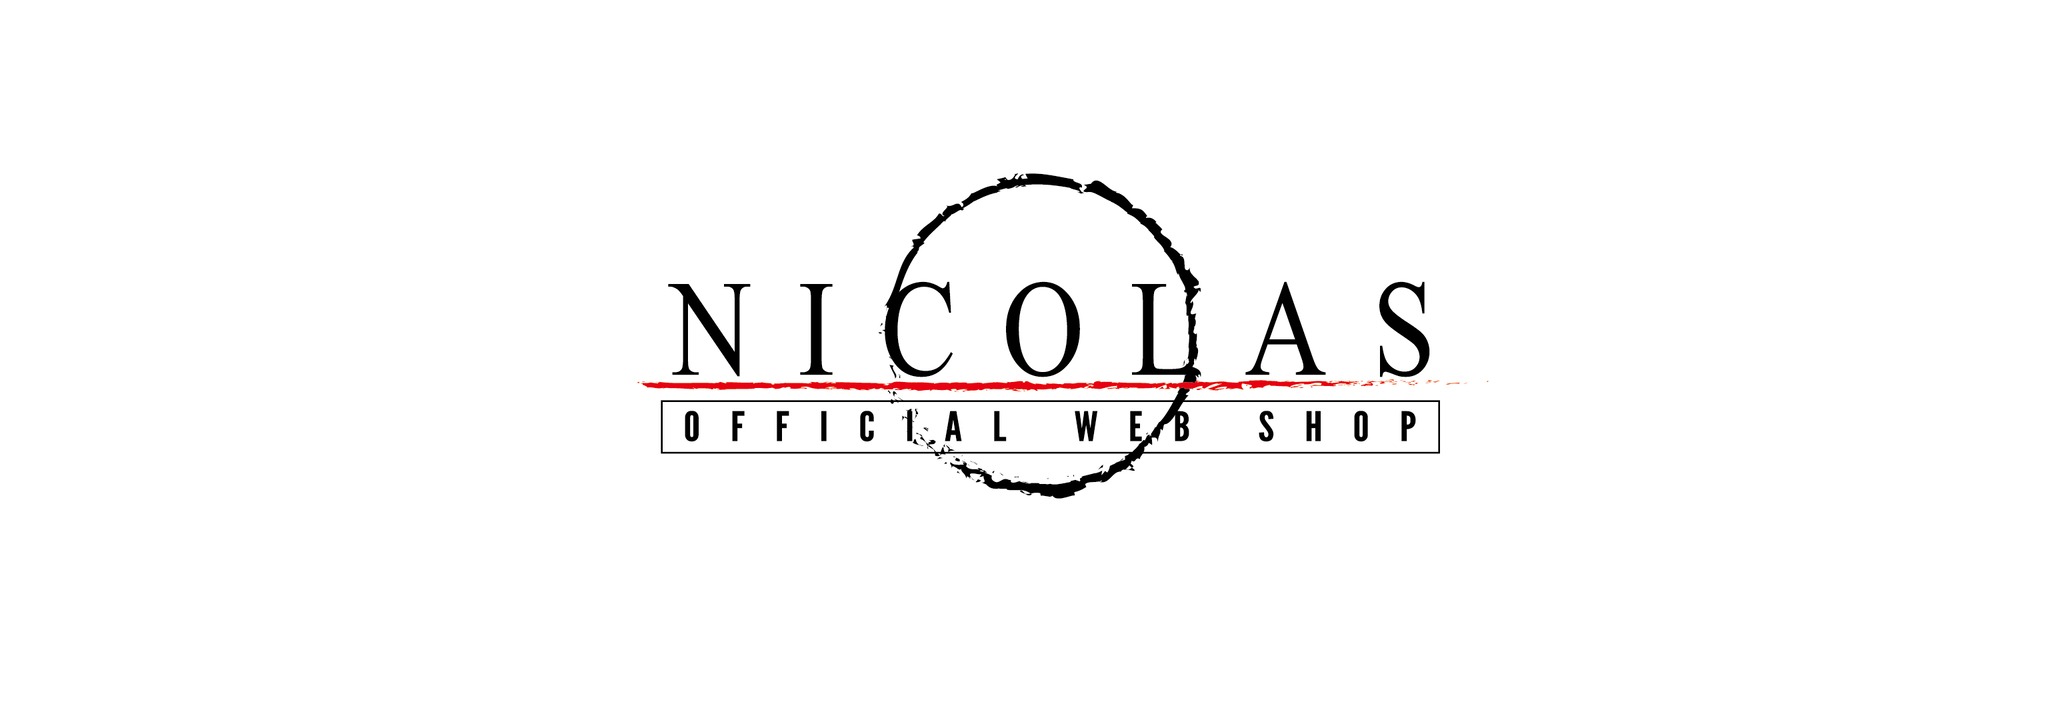 NICOLAS OFFICIAL WEB SHOP